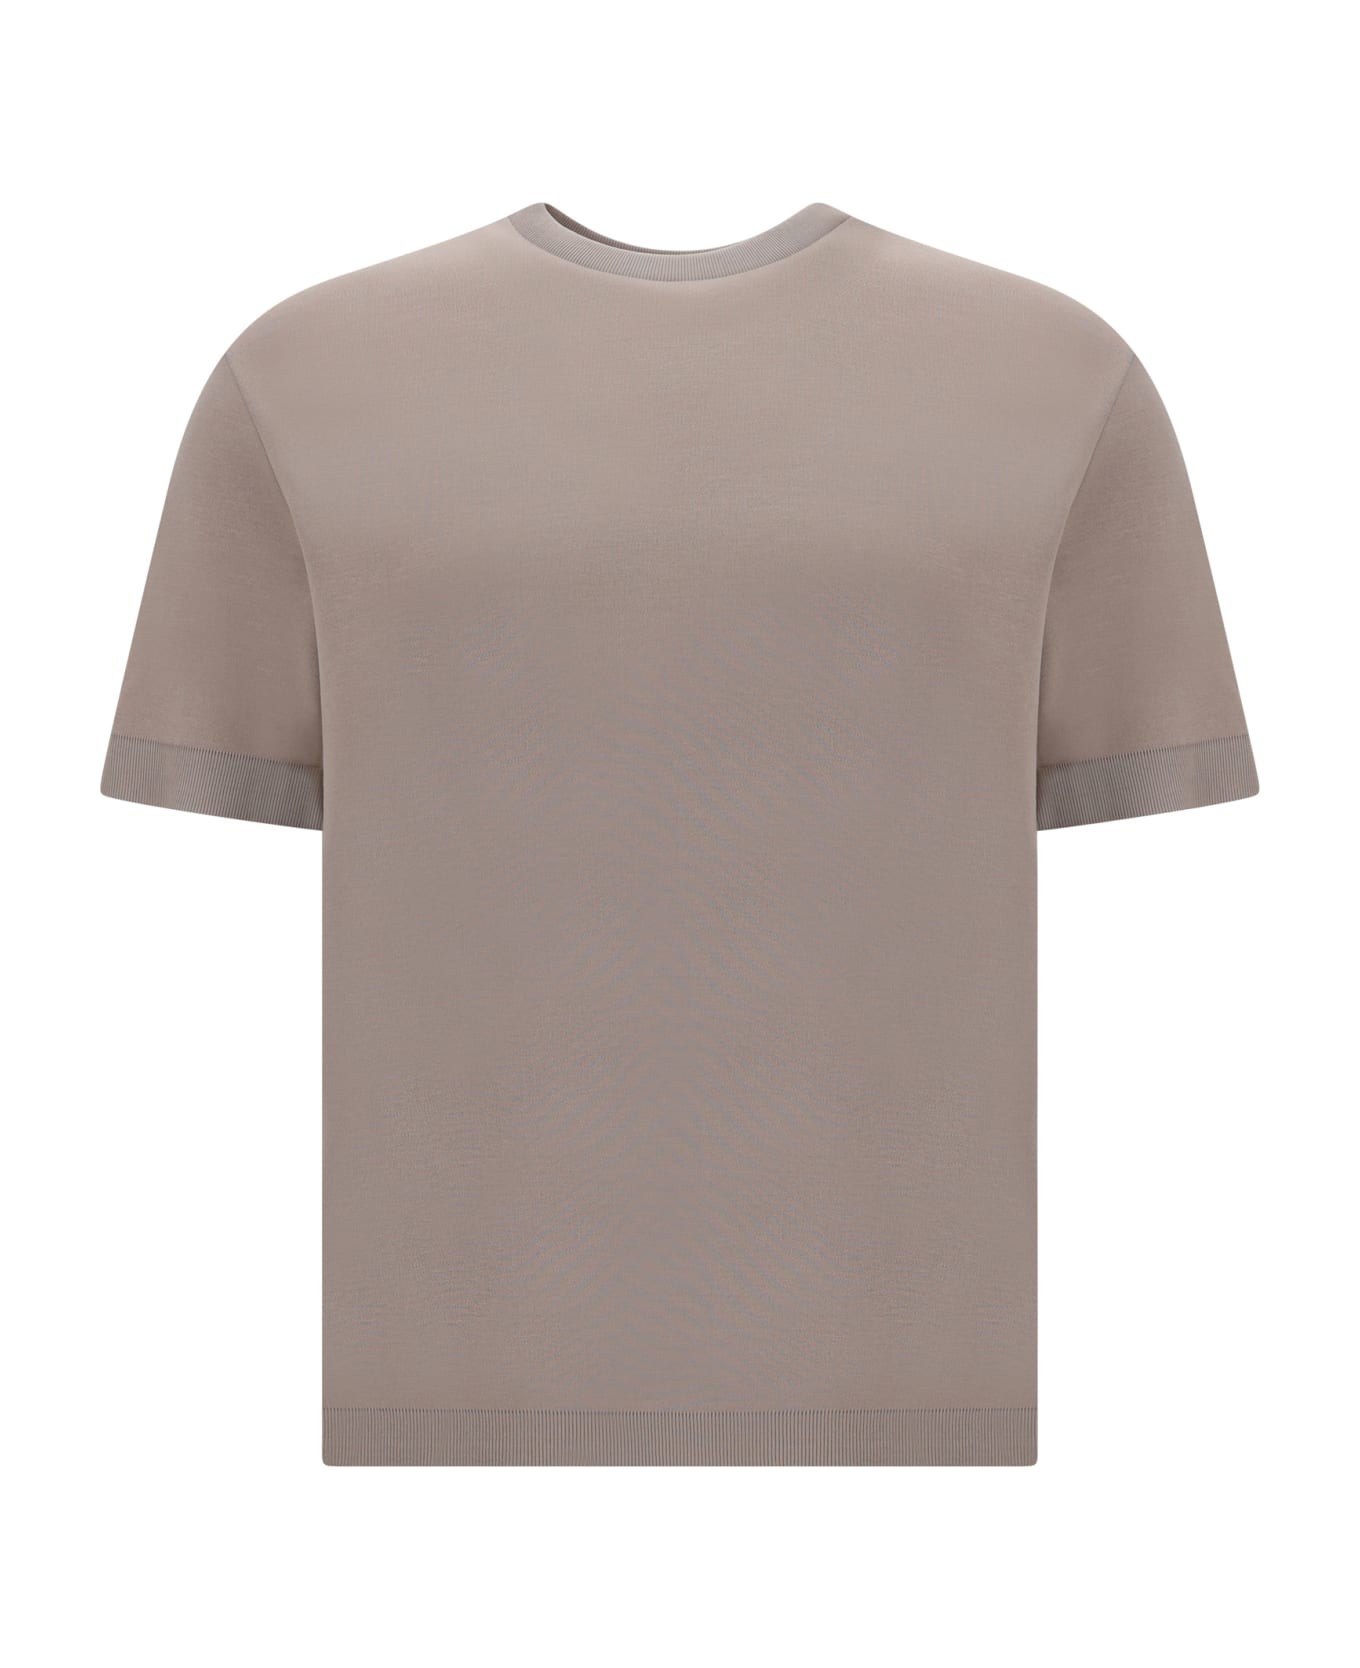 Herno T-shirt - Nude & Neutrals